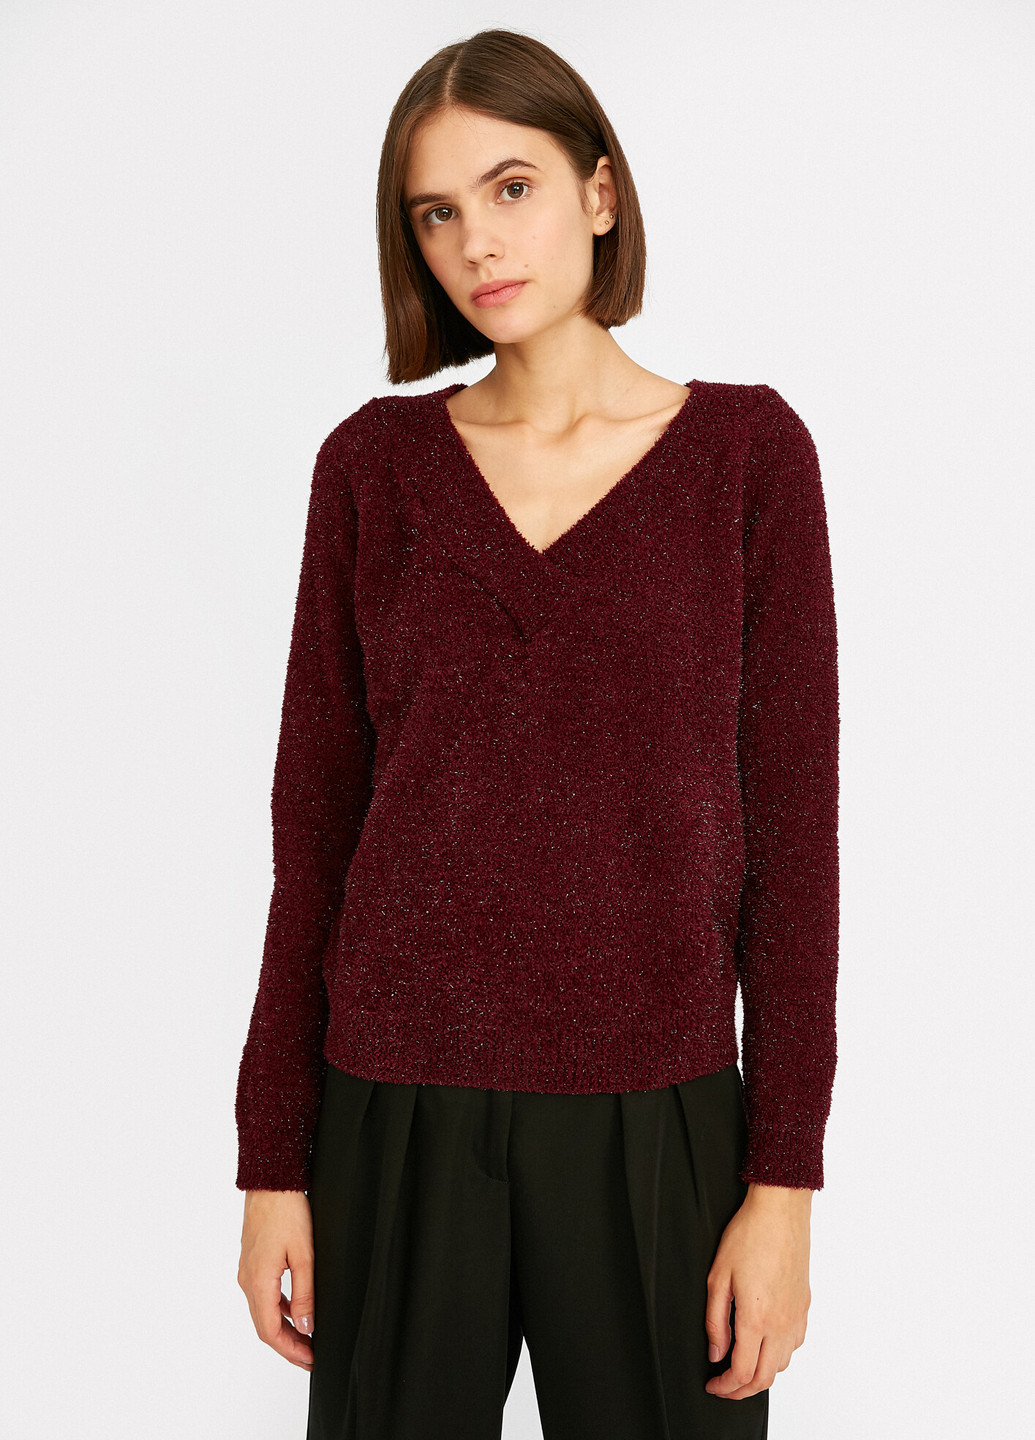 Бордовый демисезонный пуловер пуловер KOTON